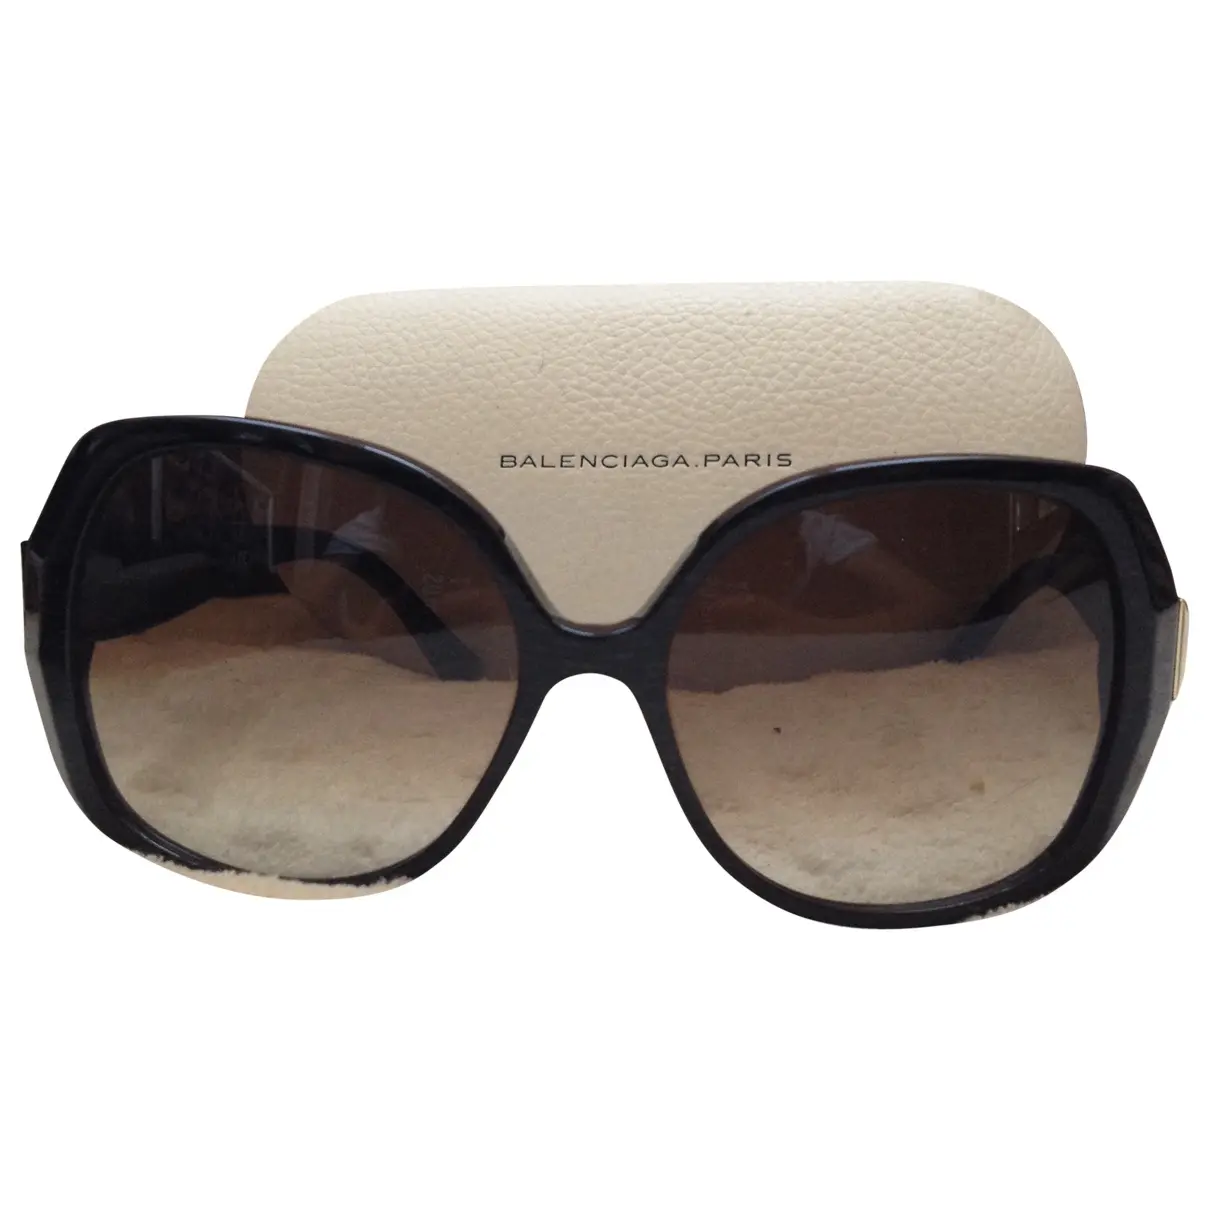 Brown Plastic Sunglasses Balenciaga